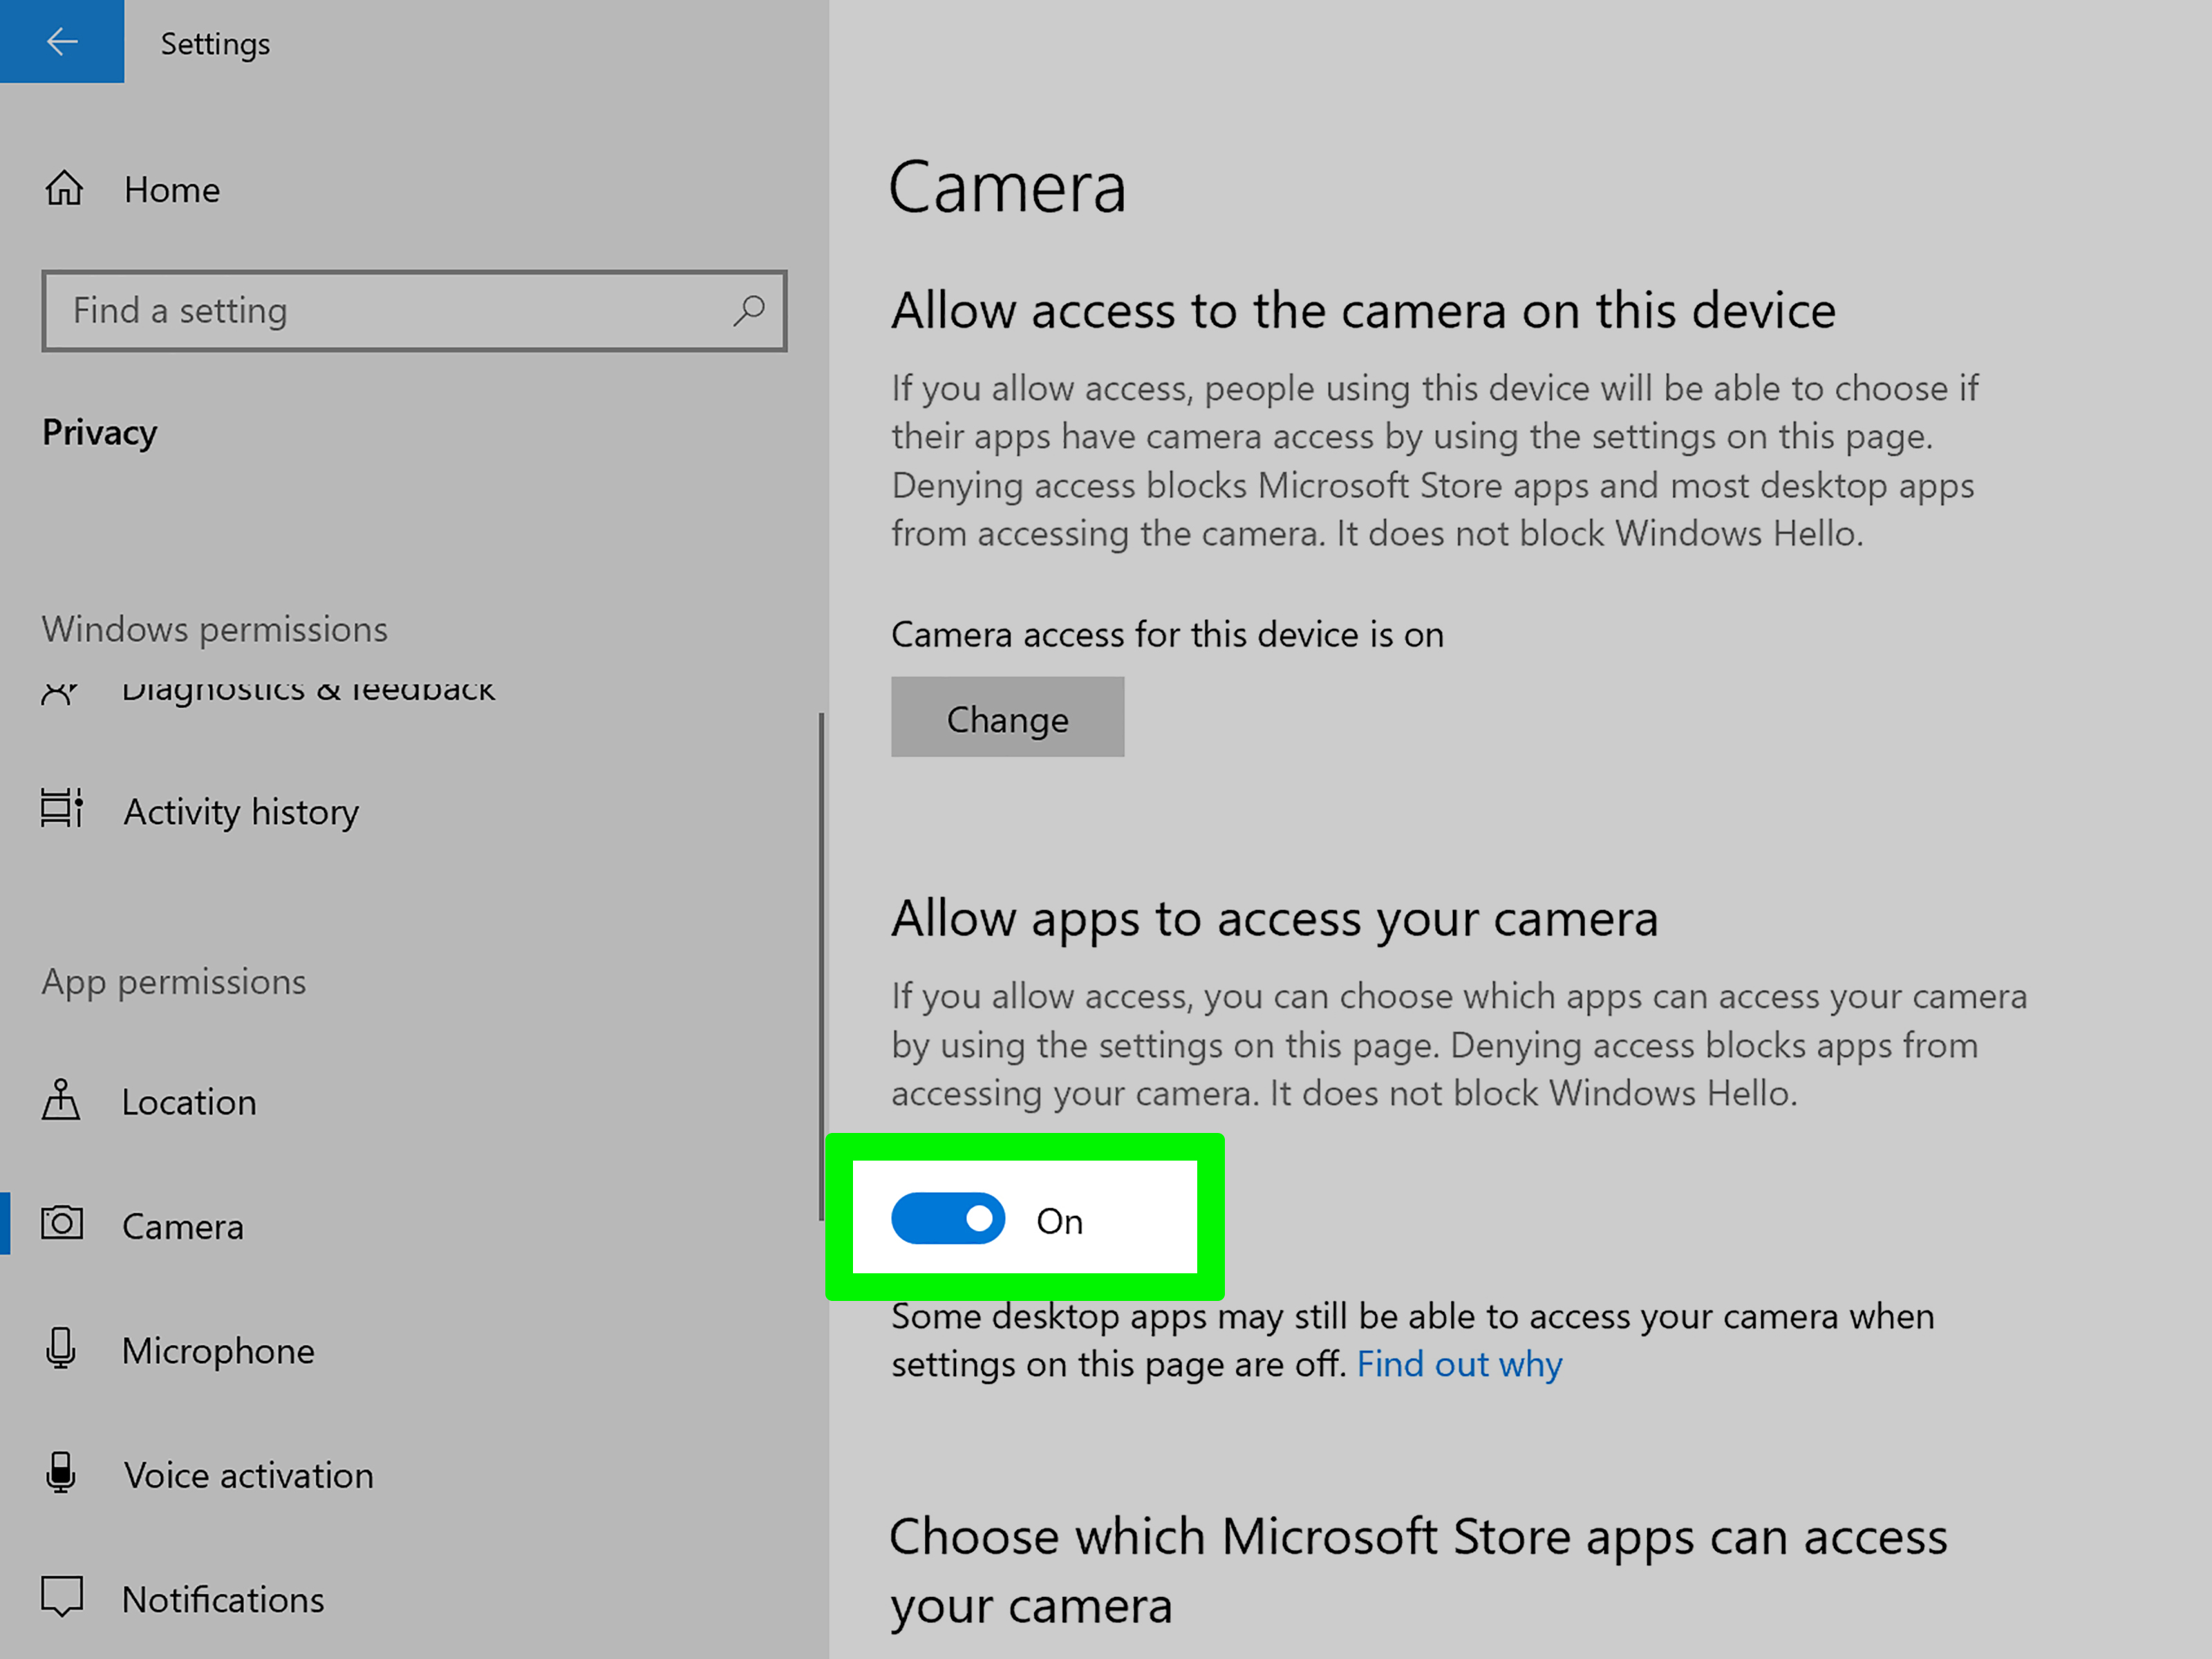 Passo 3: Clique em Câmera no menu lateral.
Passo 4: Verifique se a opção Permitir que os aplicativos acessem sua câmera está ativada.